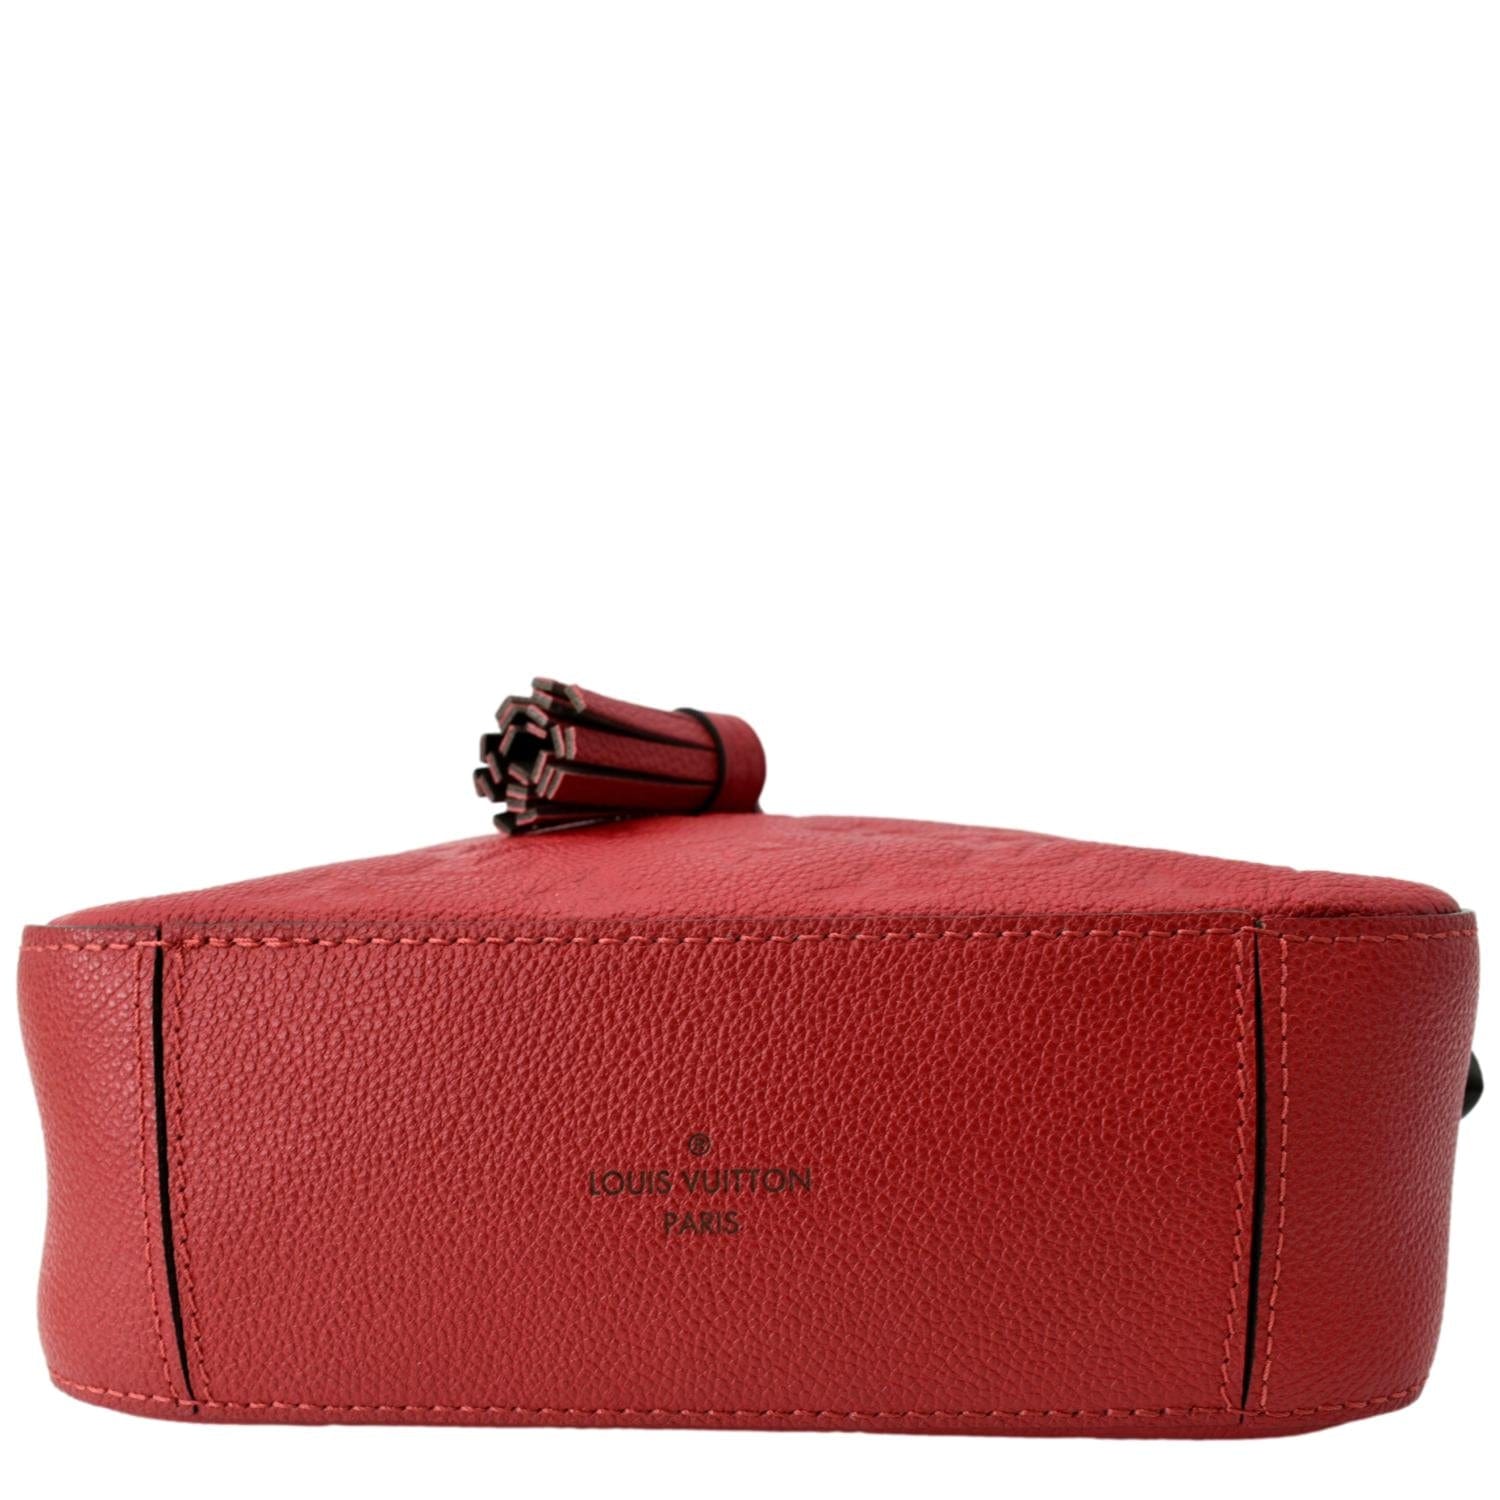 Bolsa bandolera Louis Vuitton Saintonge diseño monogram de lona y cuero de  becerro coquelicot red con correa de hombro roja asas color rojo y herrajes  oro